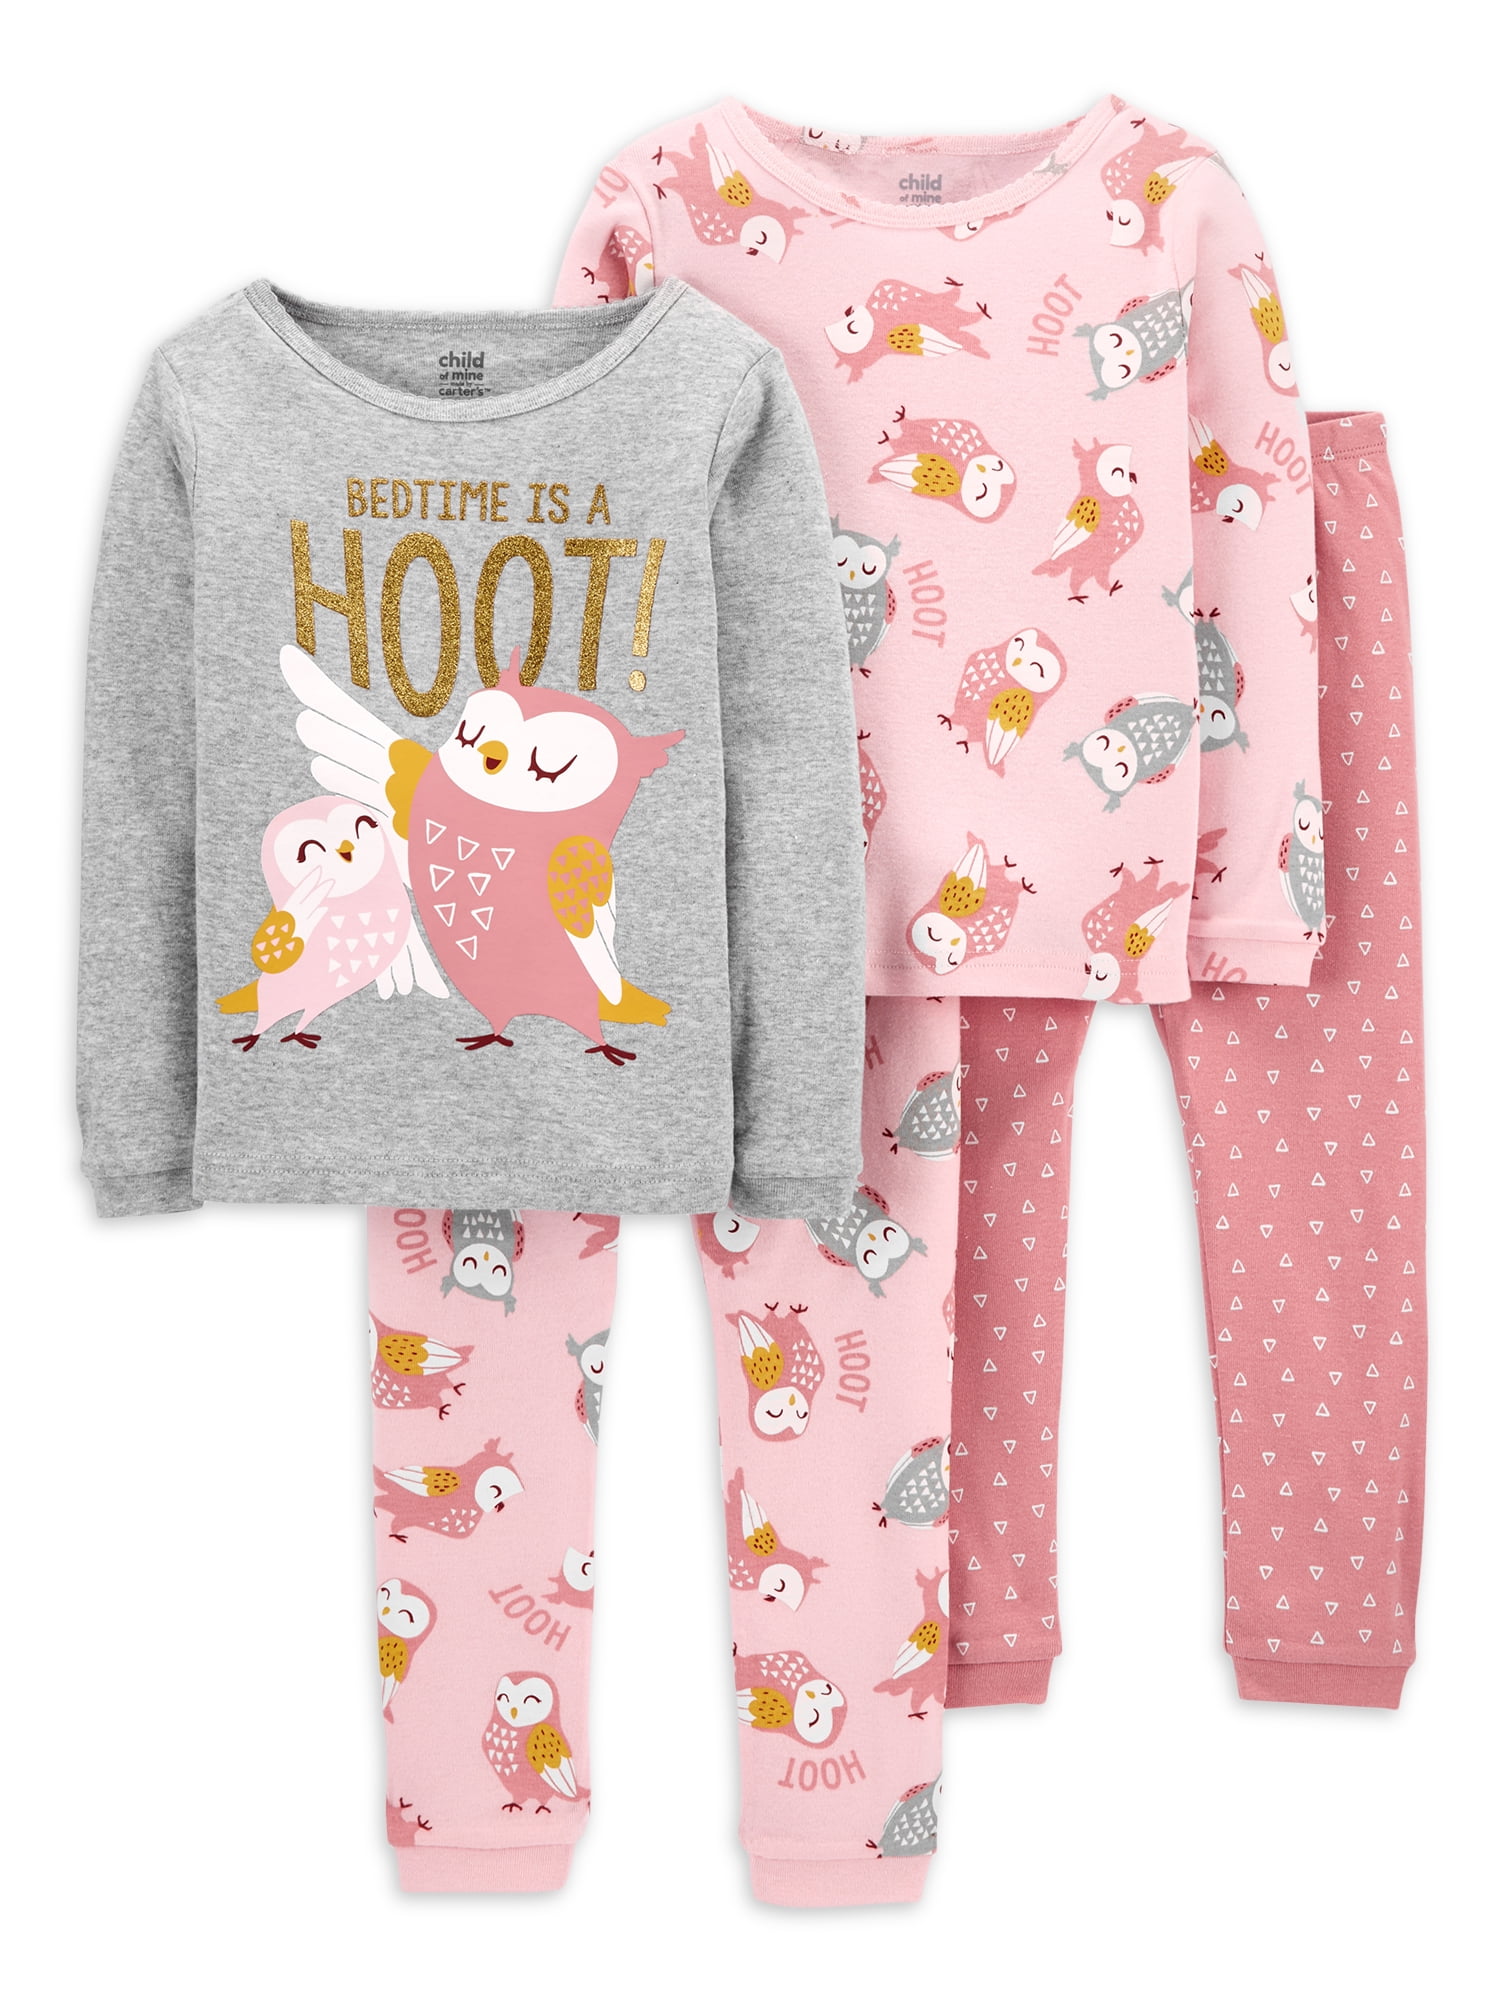 Paw Patrol Pyjamas Girls Pjs Sleepwear Ages 1 to 4 Yrs 